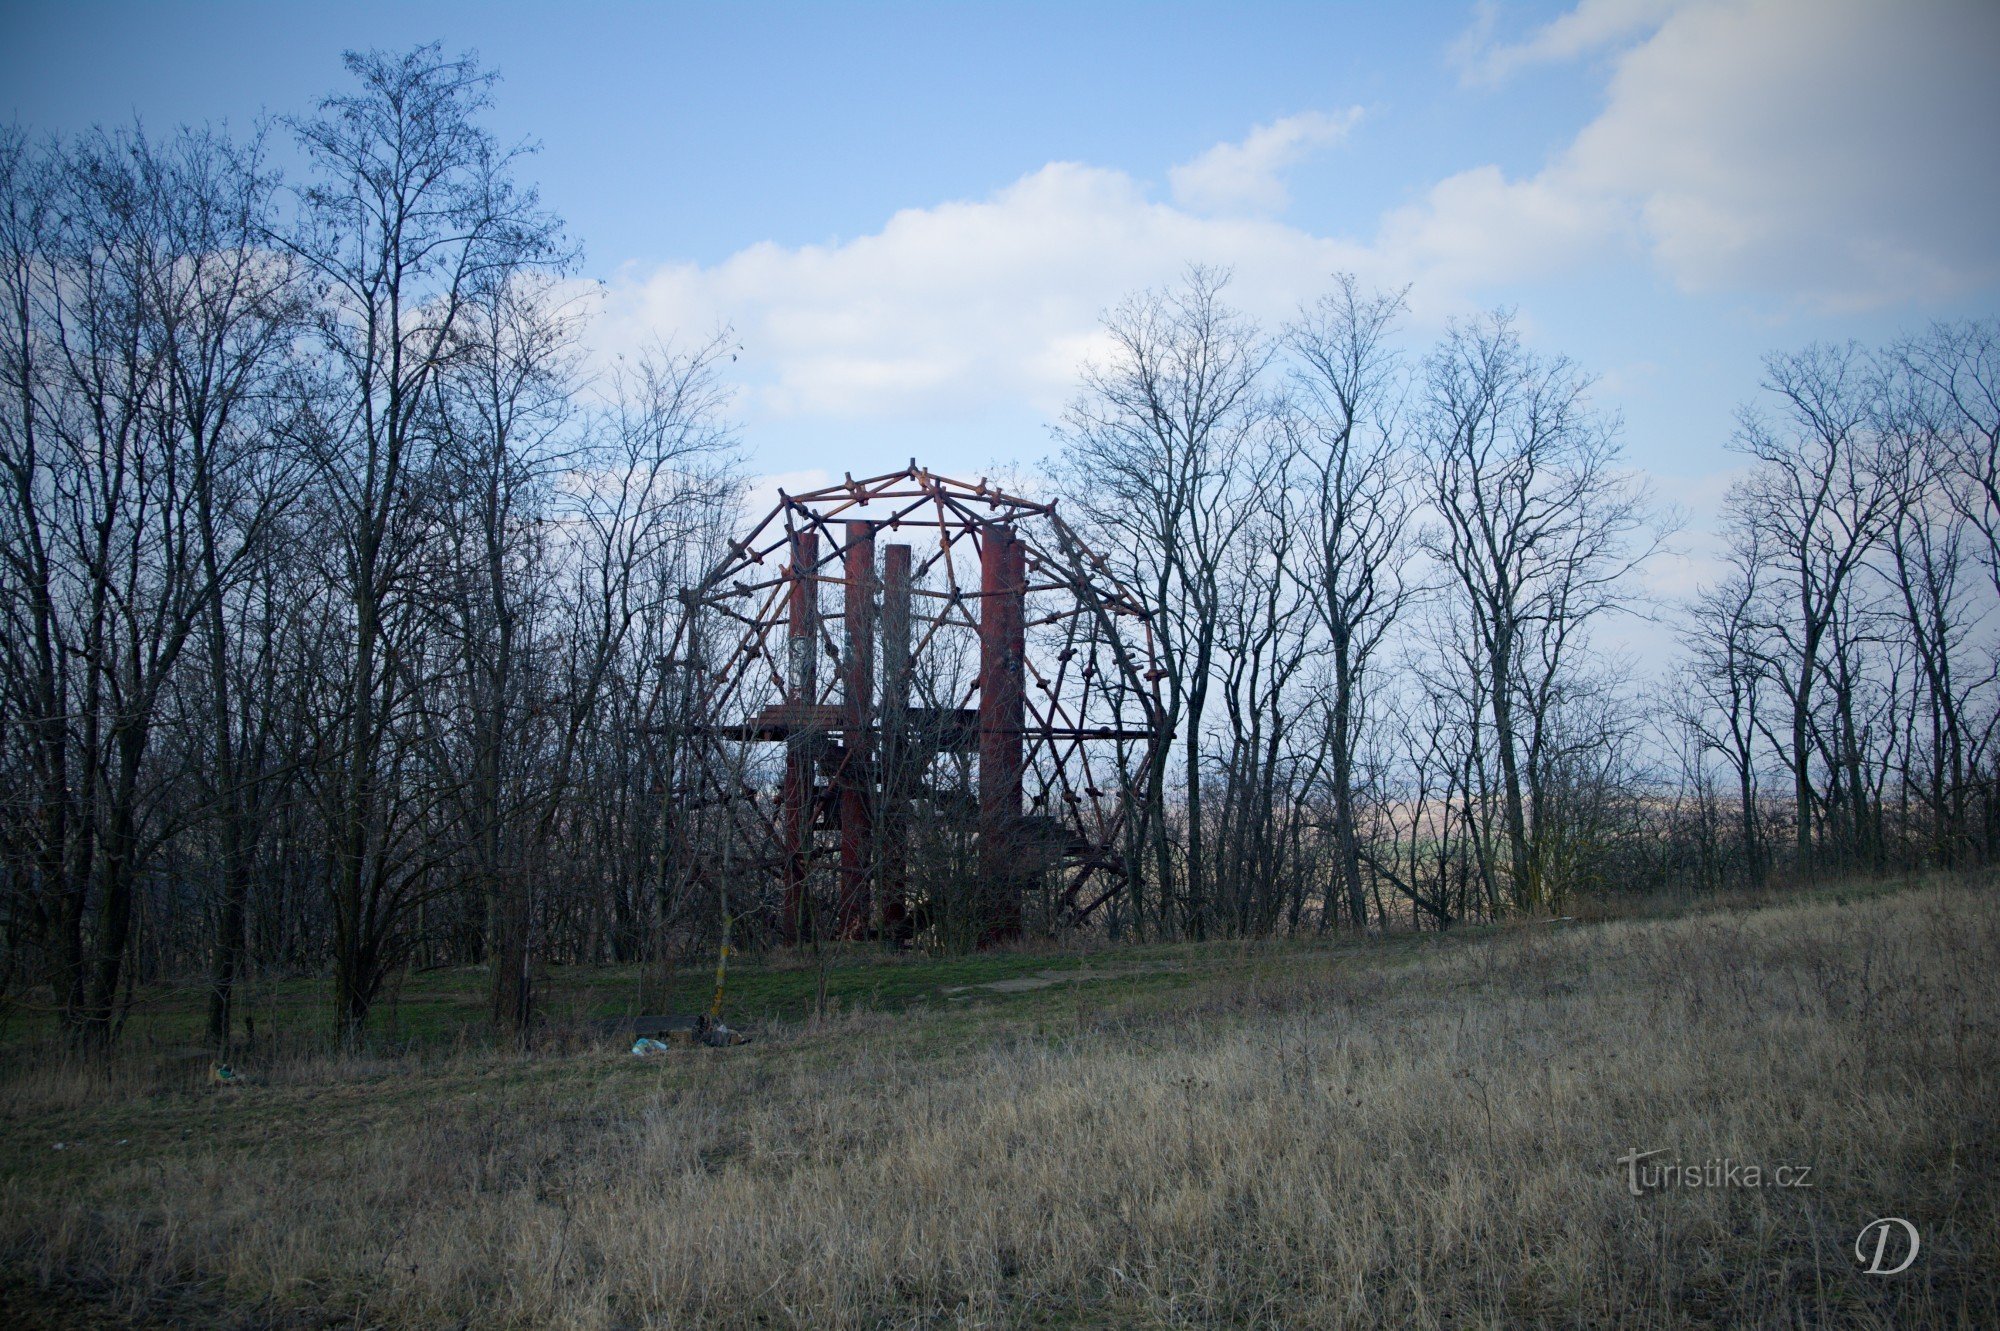 Monument på Čertoraj-bakken